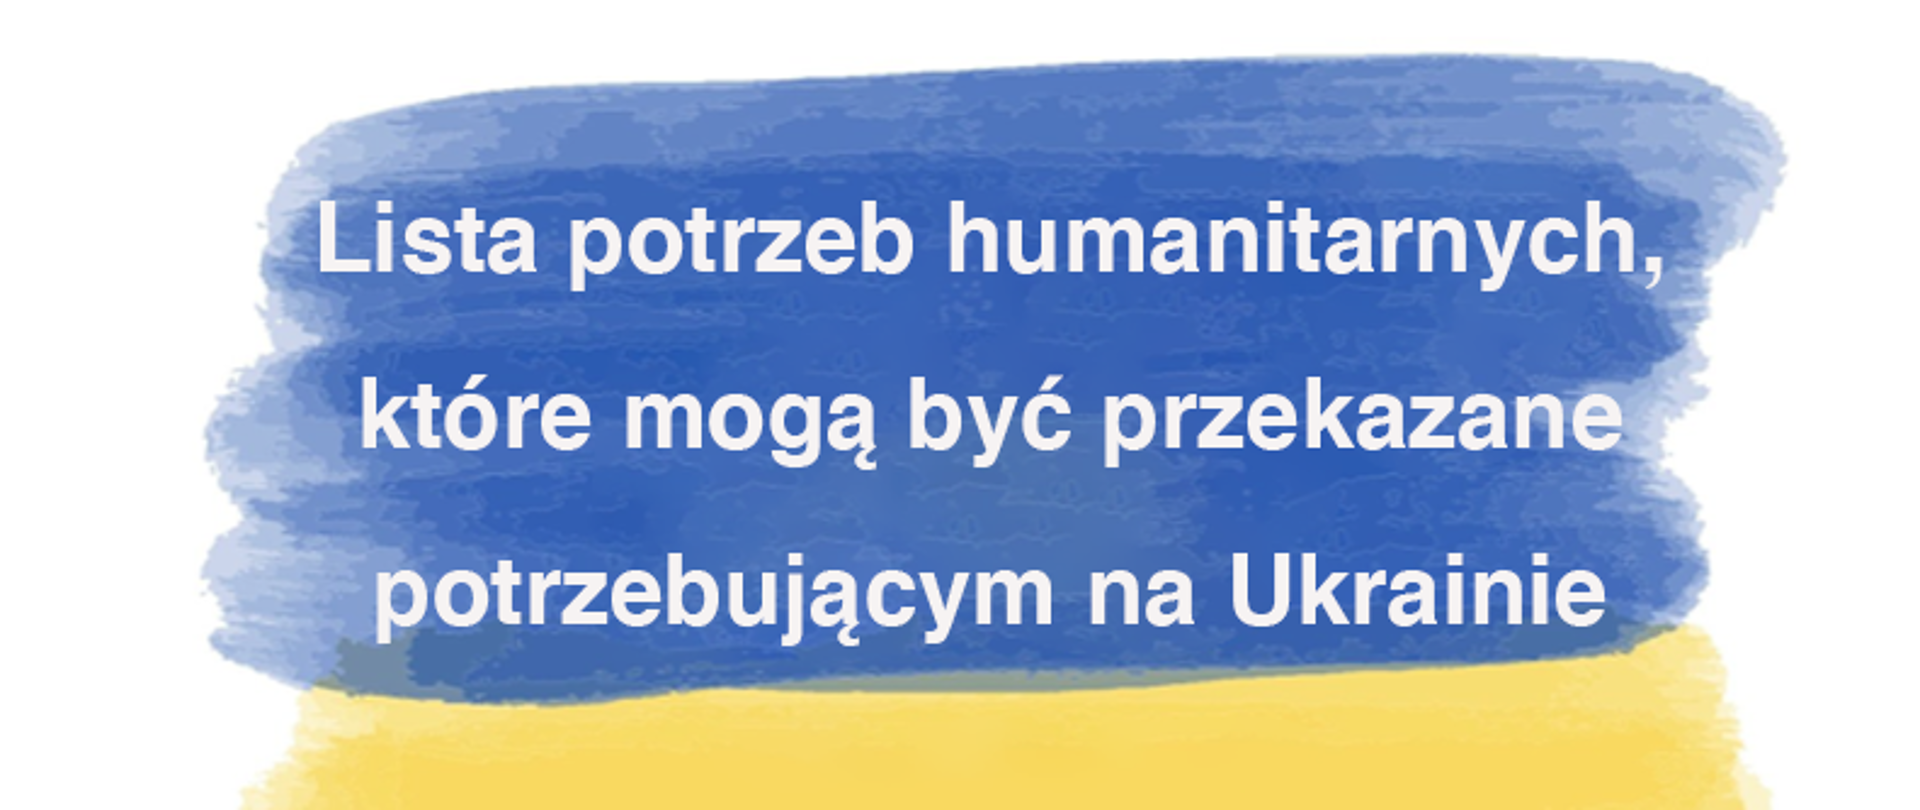 lista potrzeb humanitarnych, które mogą przekazane potrzebującym na Ukrainie